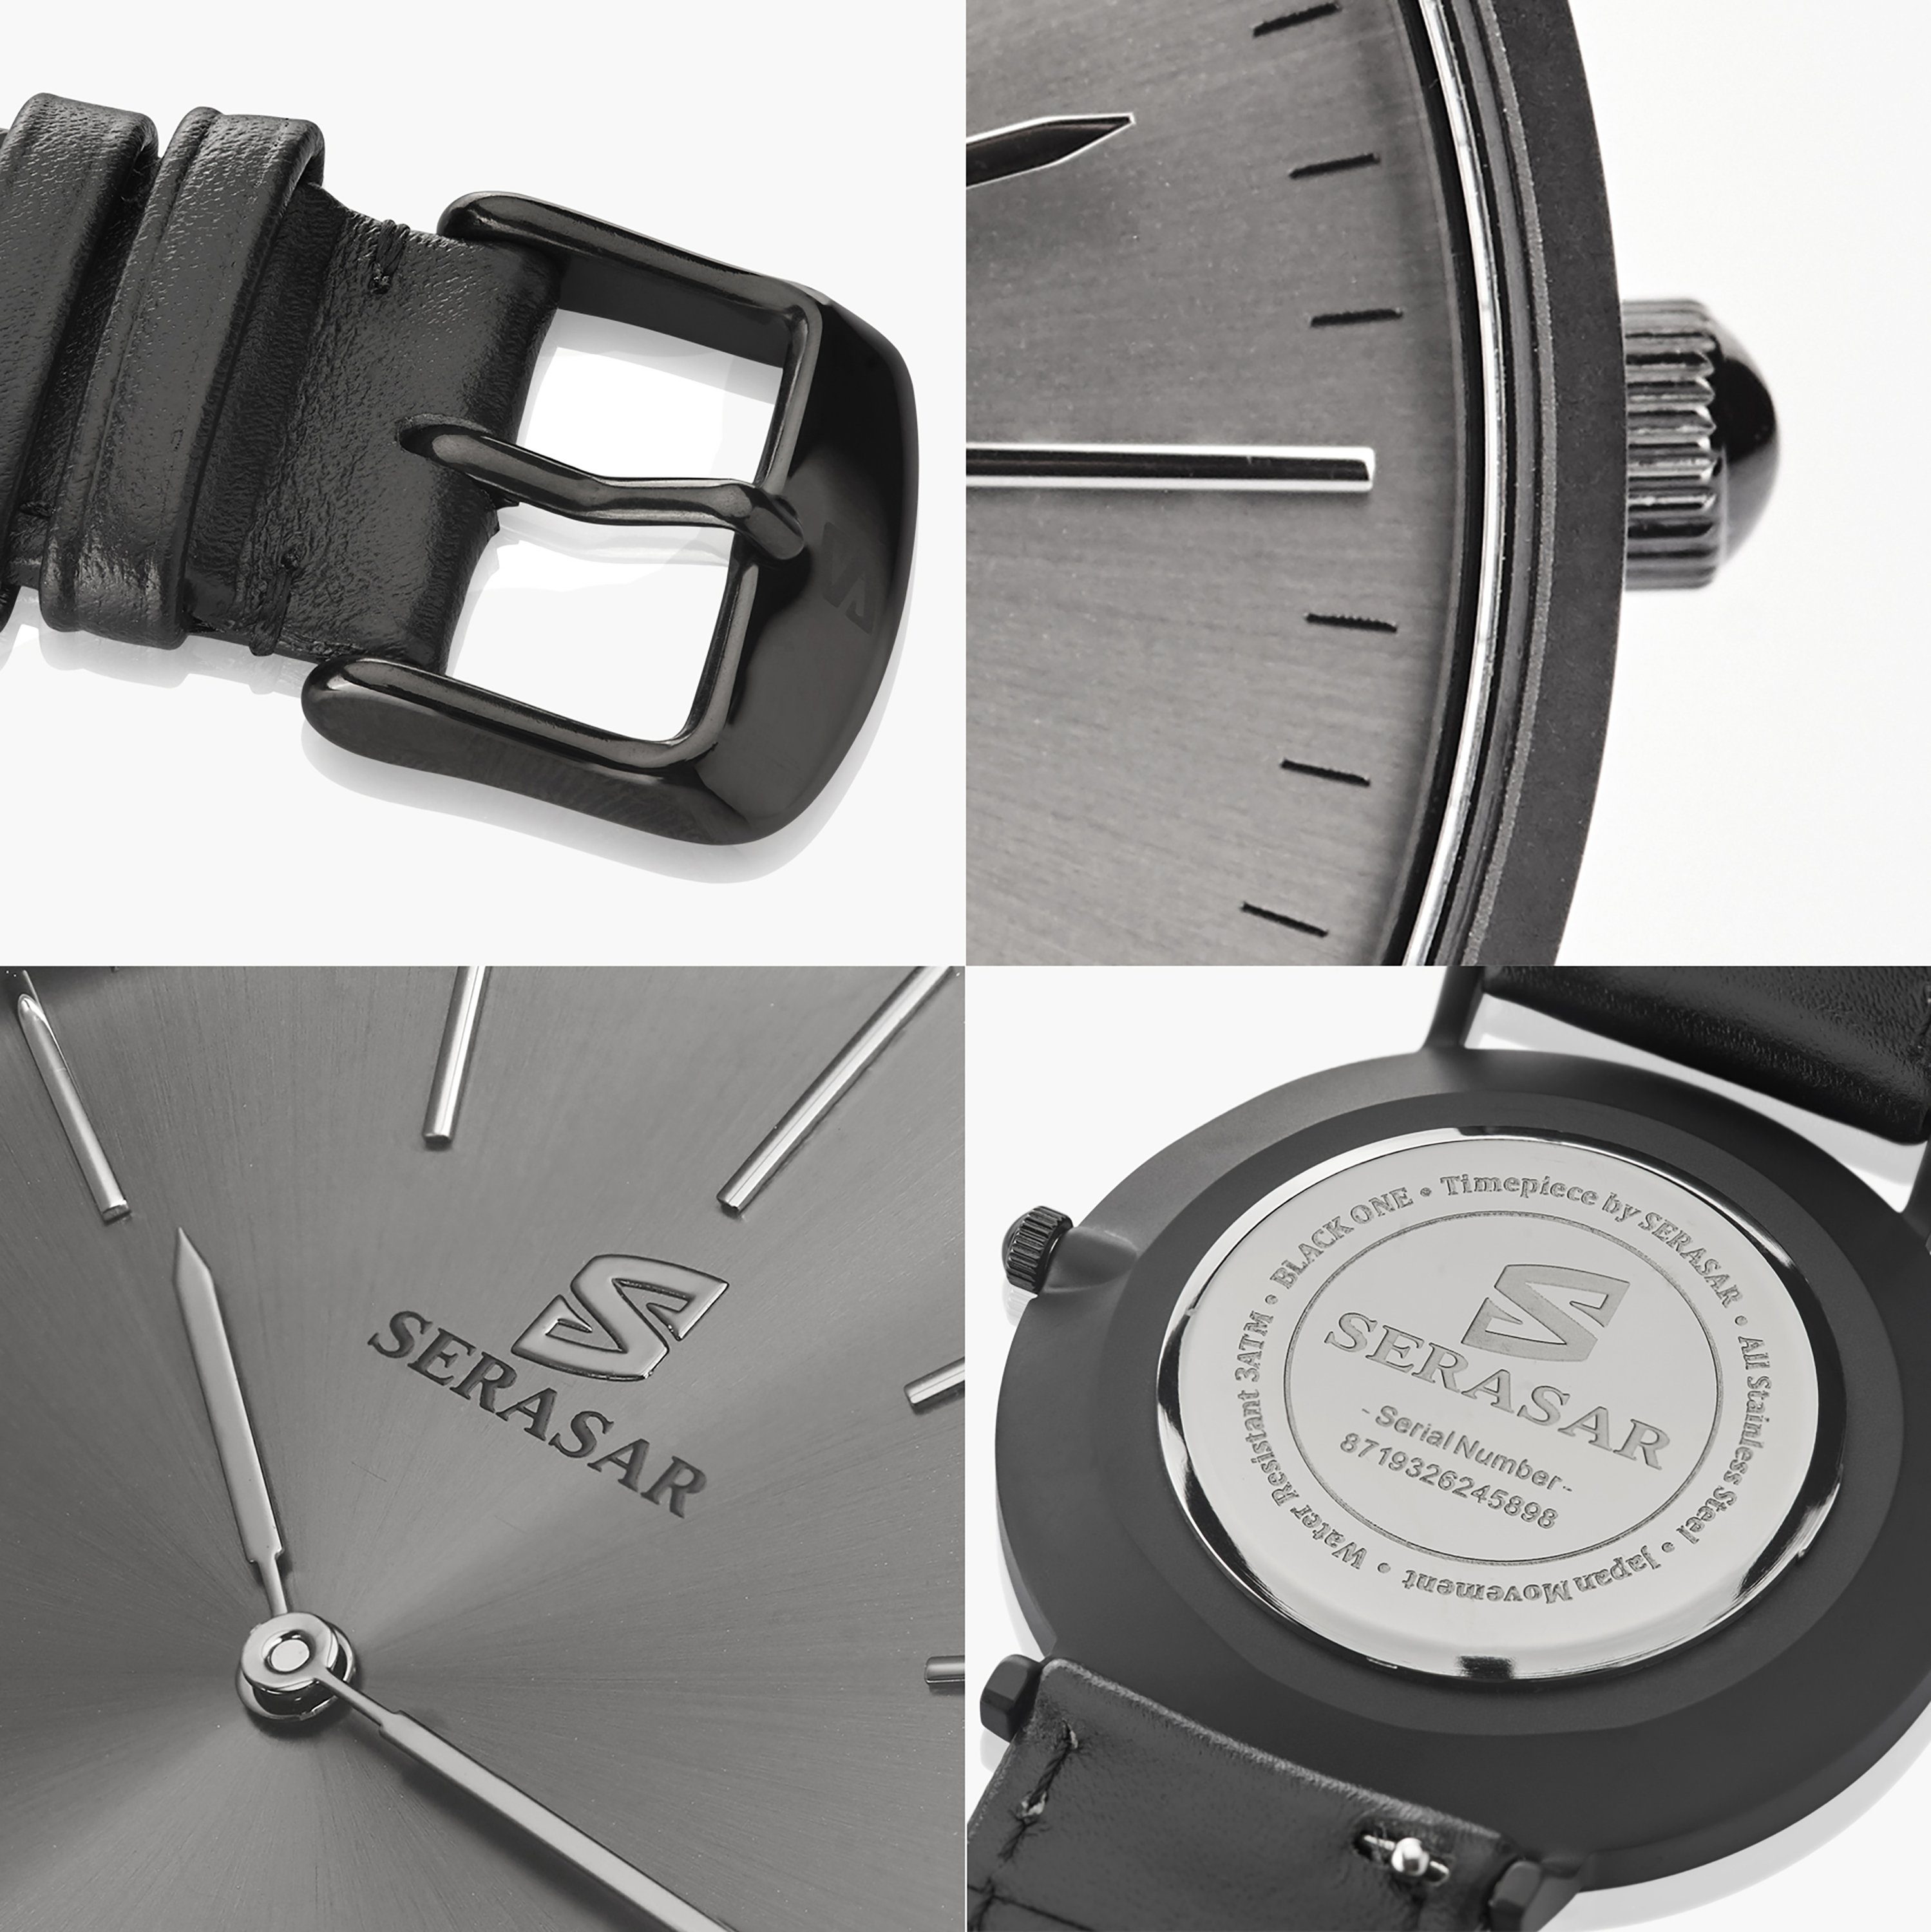 (35gr) Quarzuhr und leicht sehr SERASAR flach Japanischem Armbanduhr  Quarzwerk mit (1-tlg), ONE", "BLACK (6mm) sehr